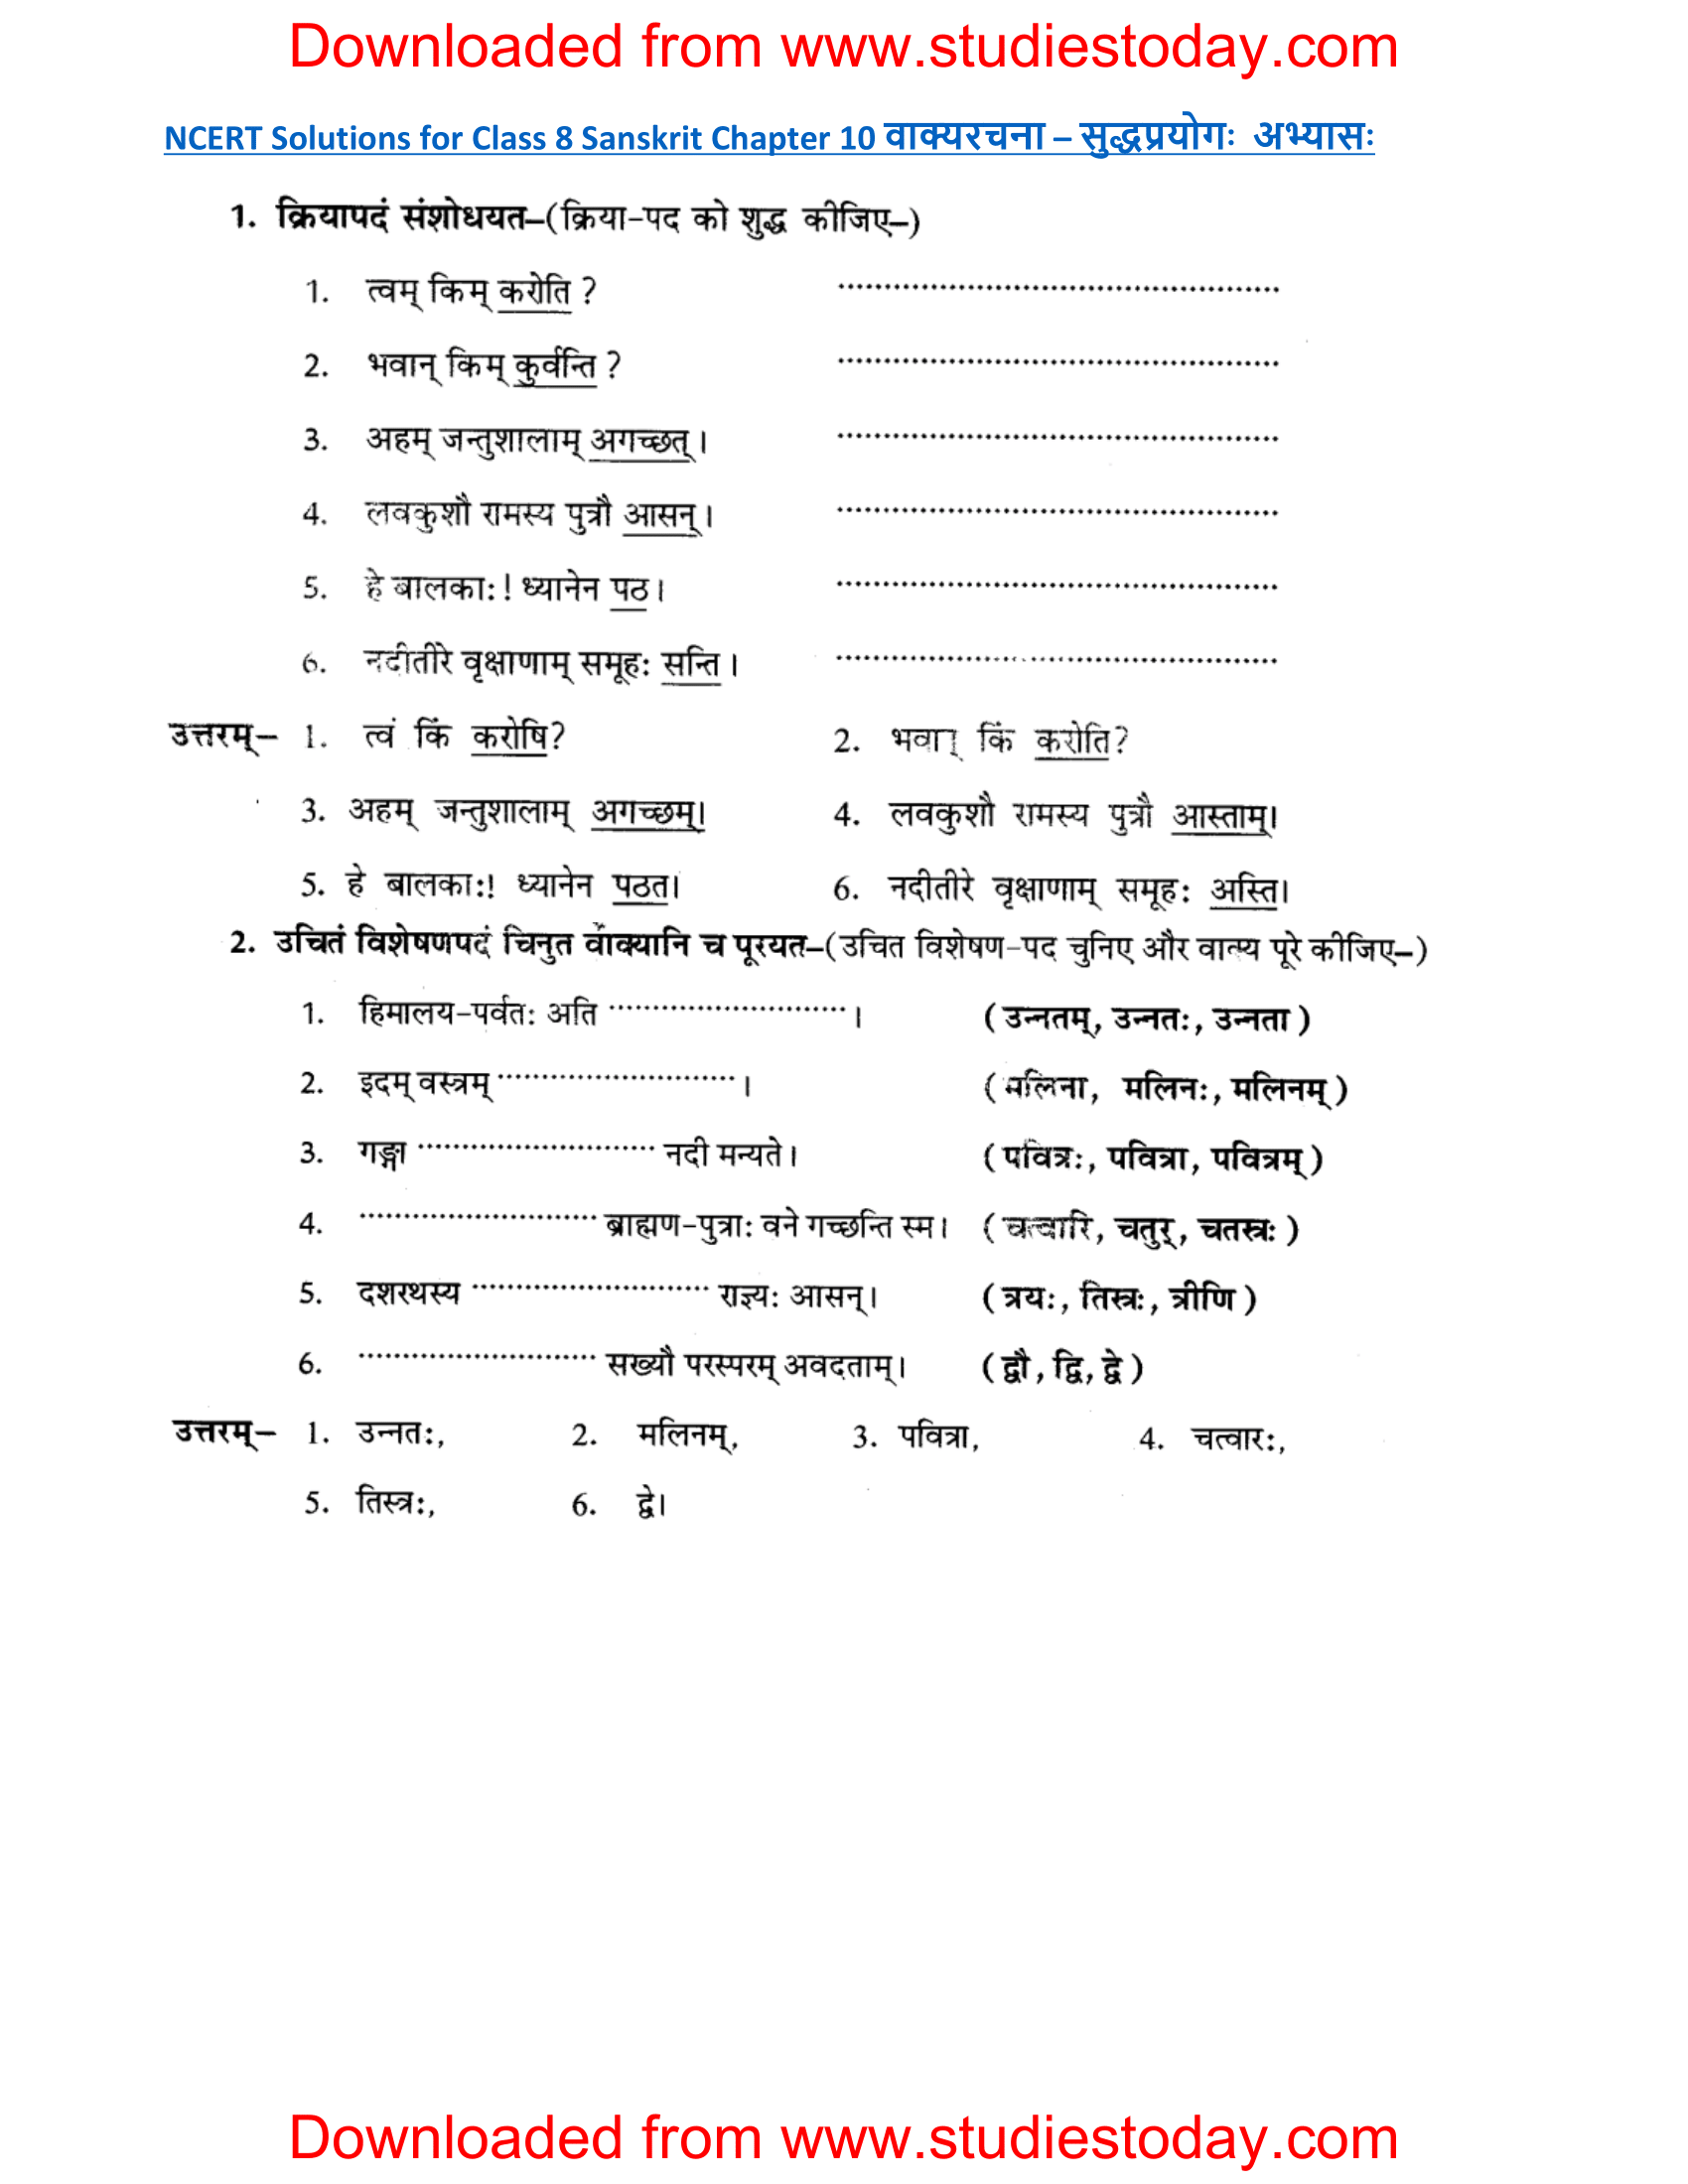 ncert-solutions-class-8-sanskrit-chapter-10-vakyarachna-sudhpryog-1